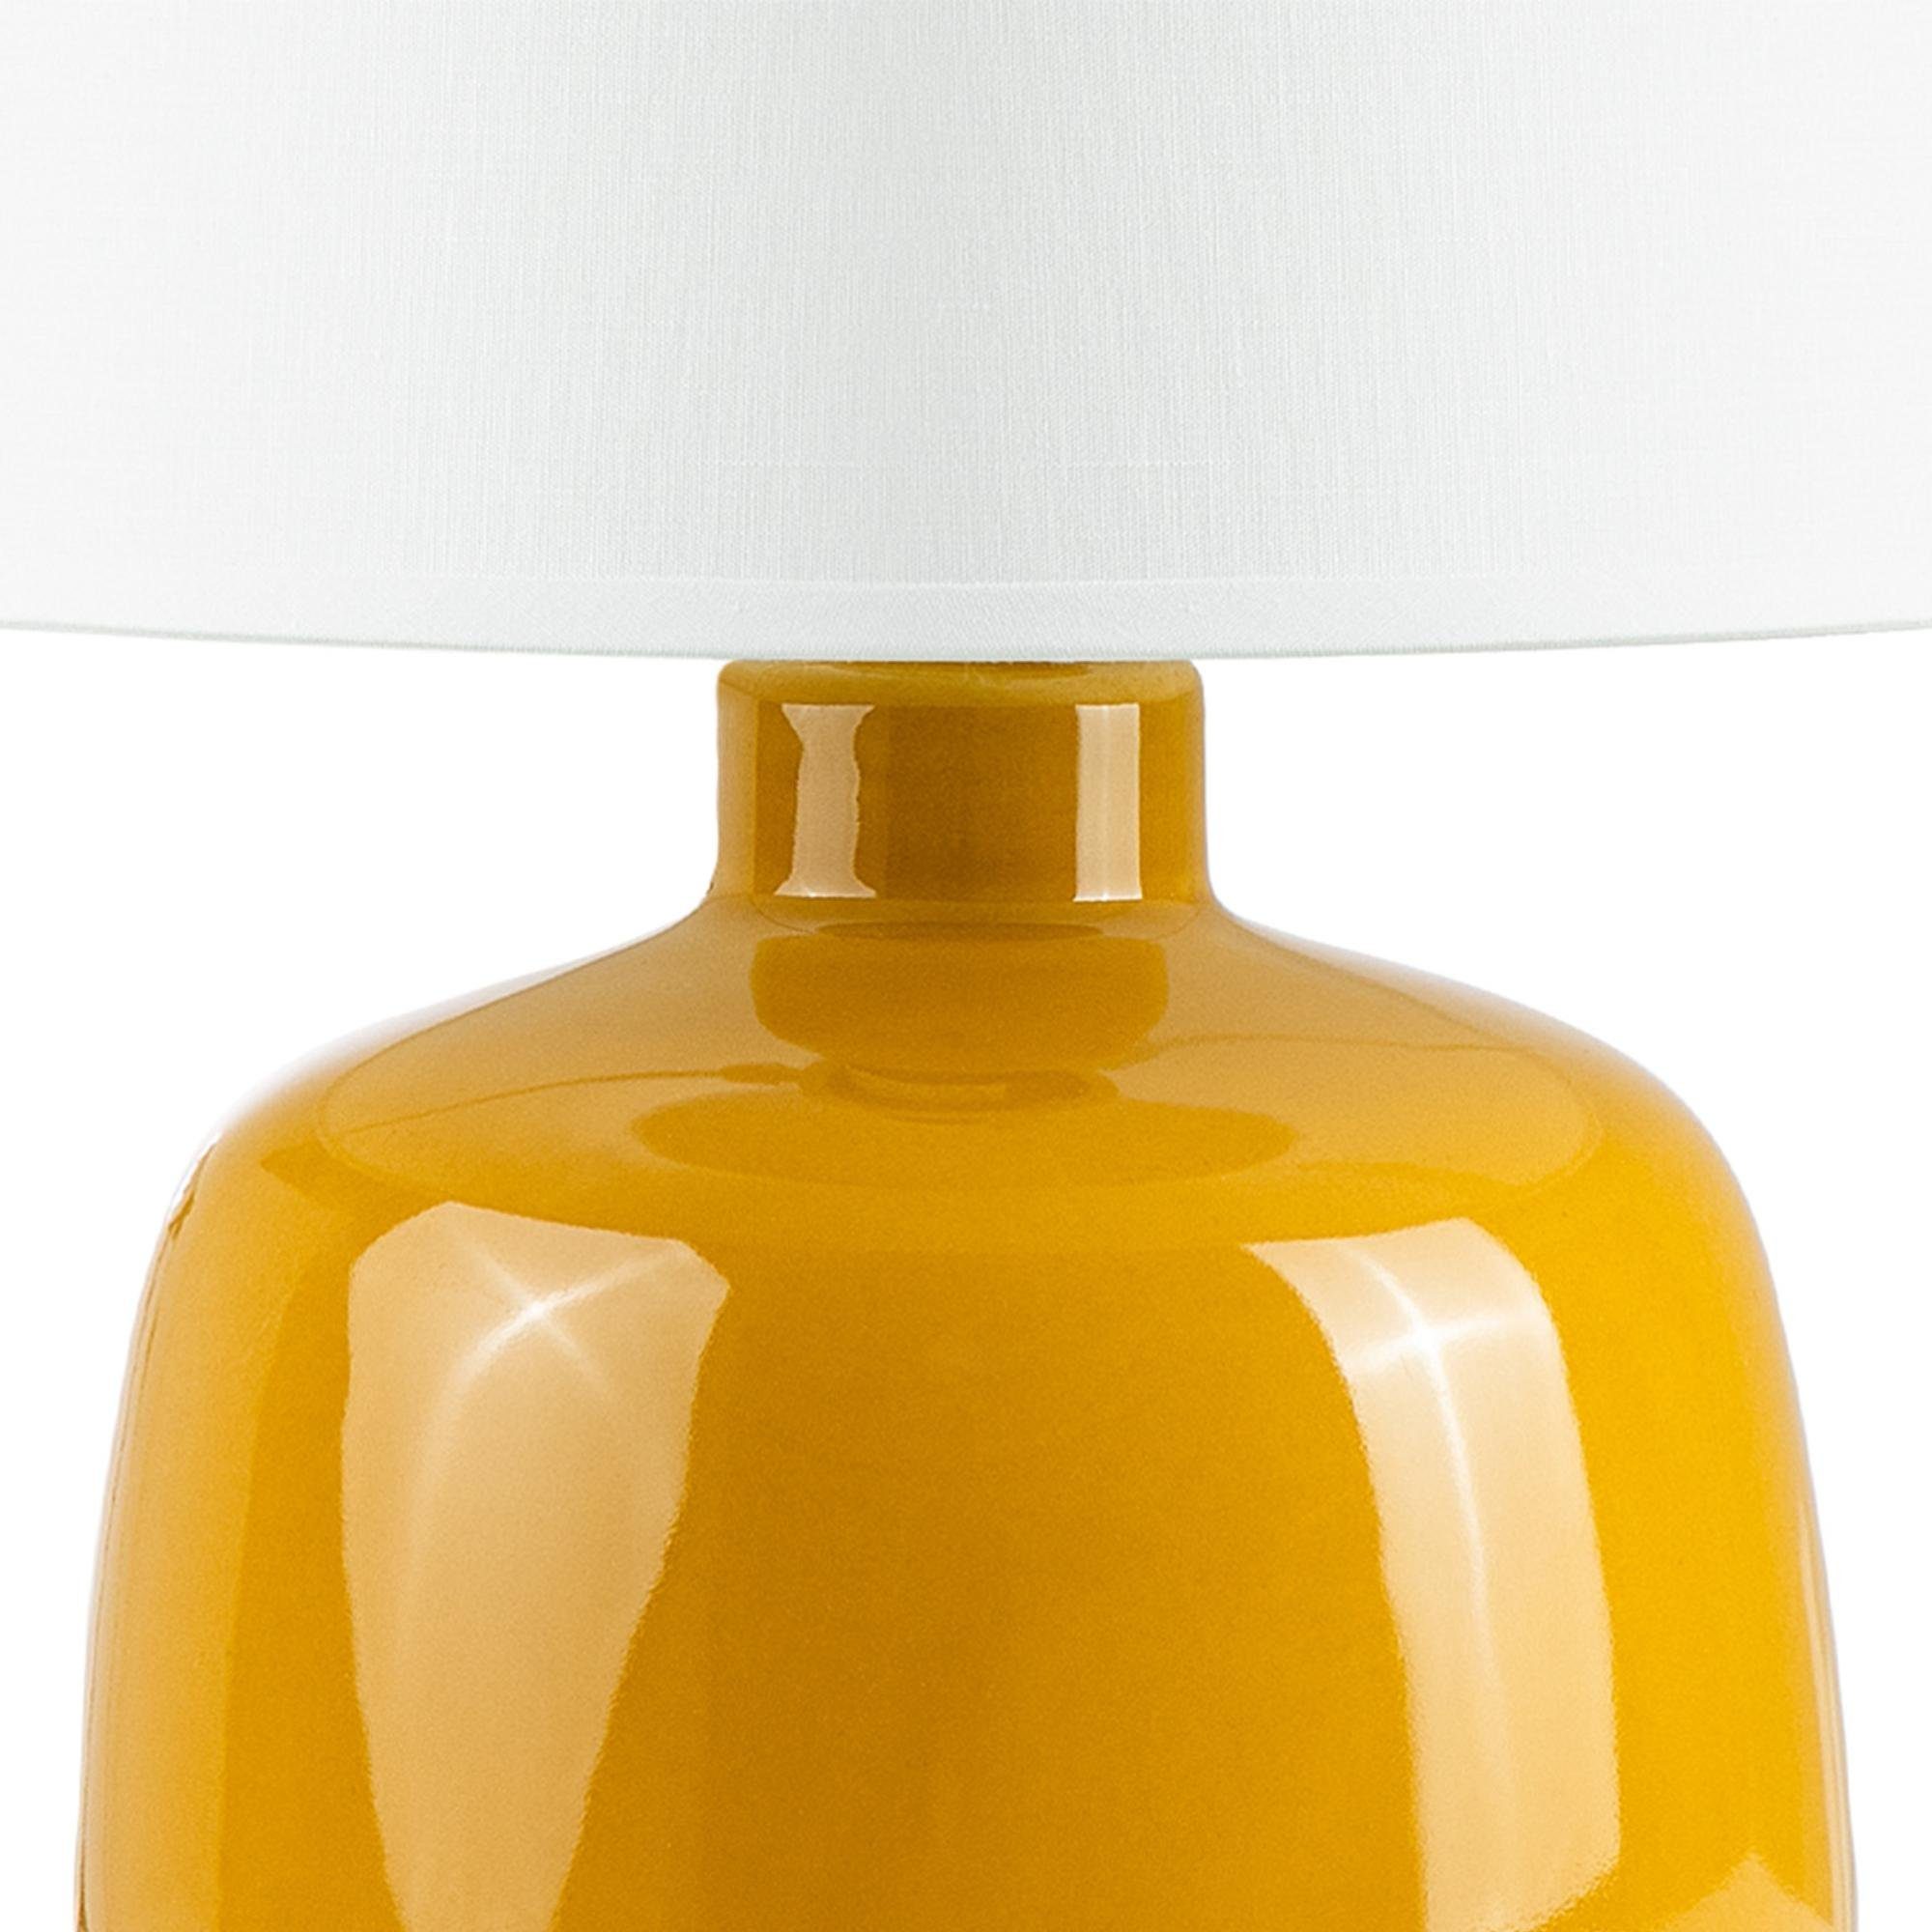 Konsimo Tischleuchte STIVUS Leuchtmittel, Tischleuchte, zu Tischlampe jedem gelb Passt Dekor, Keramiksockel ohne